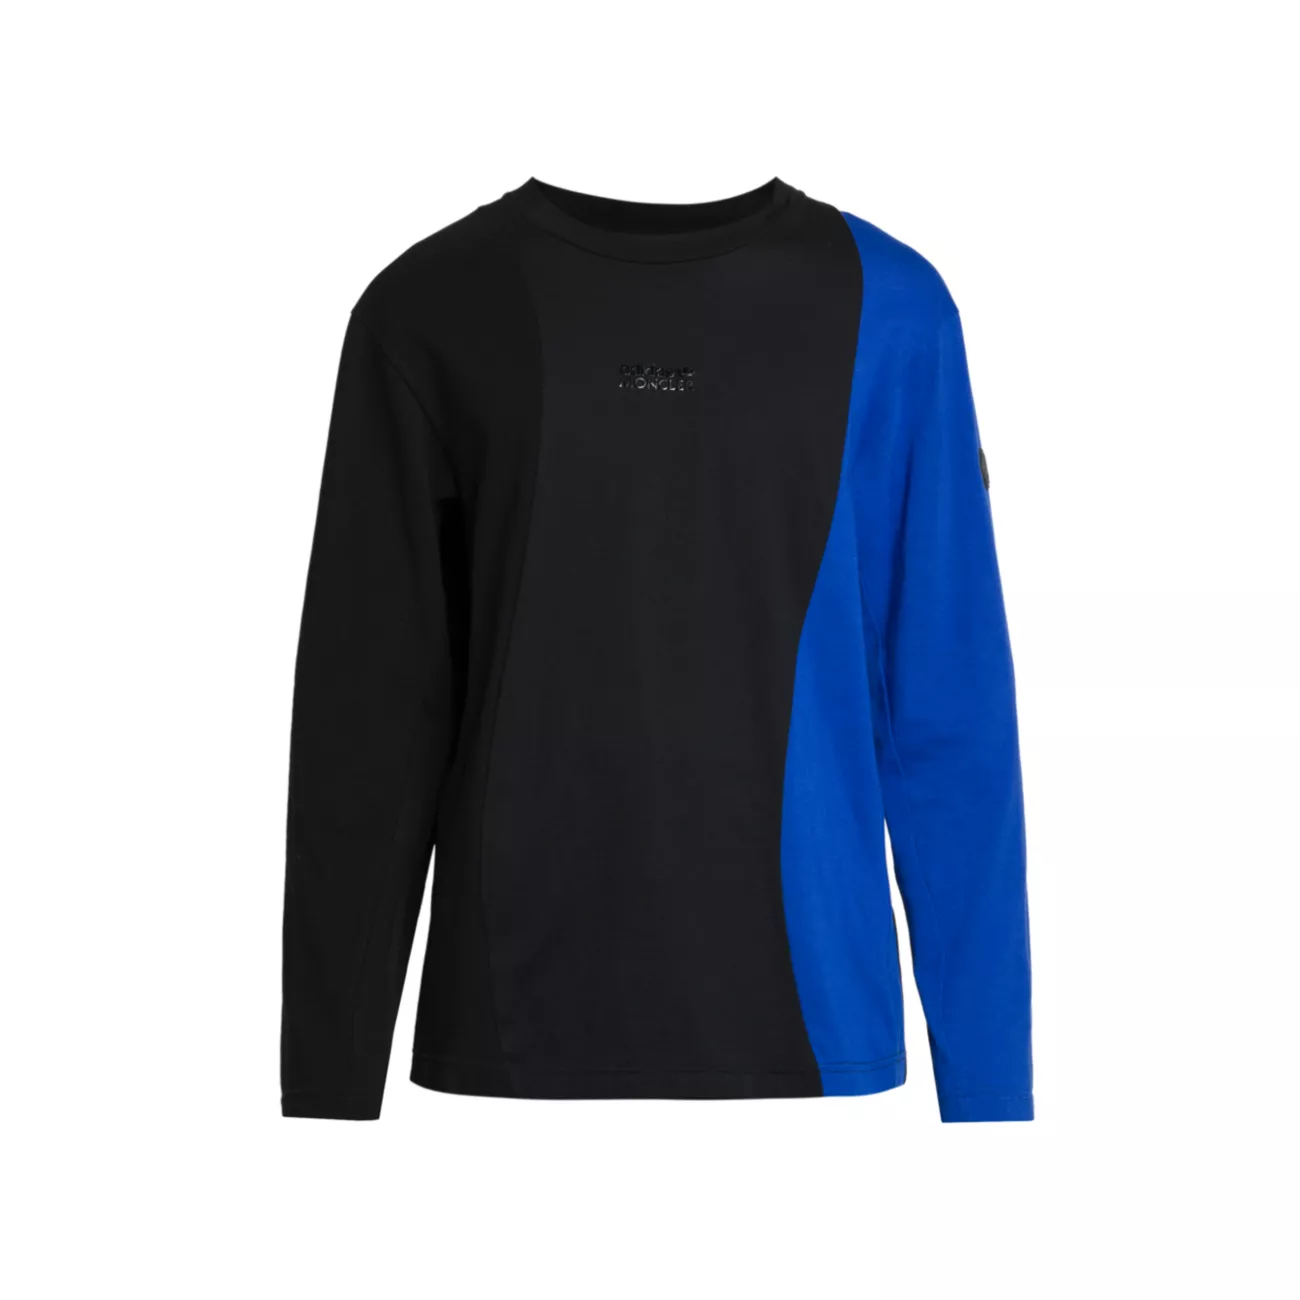 Moncler x adidas Originals Colorblocked T-Shirt Moncler Genius